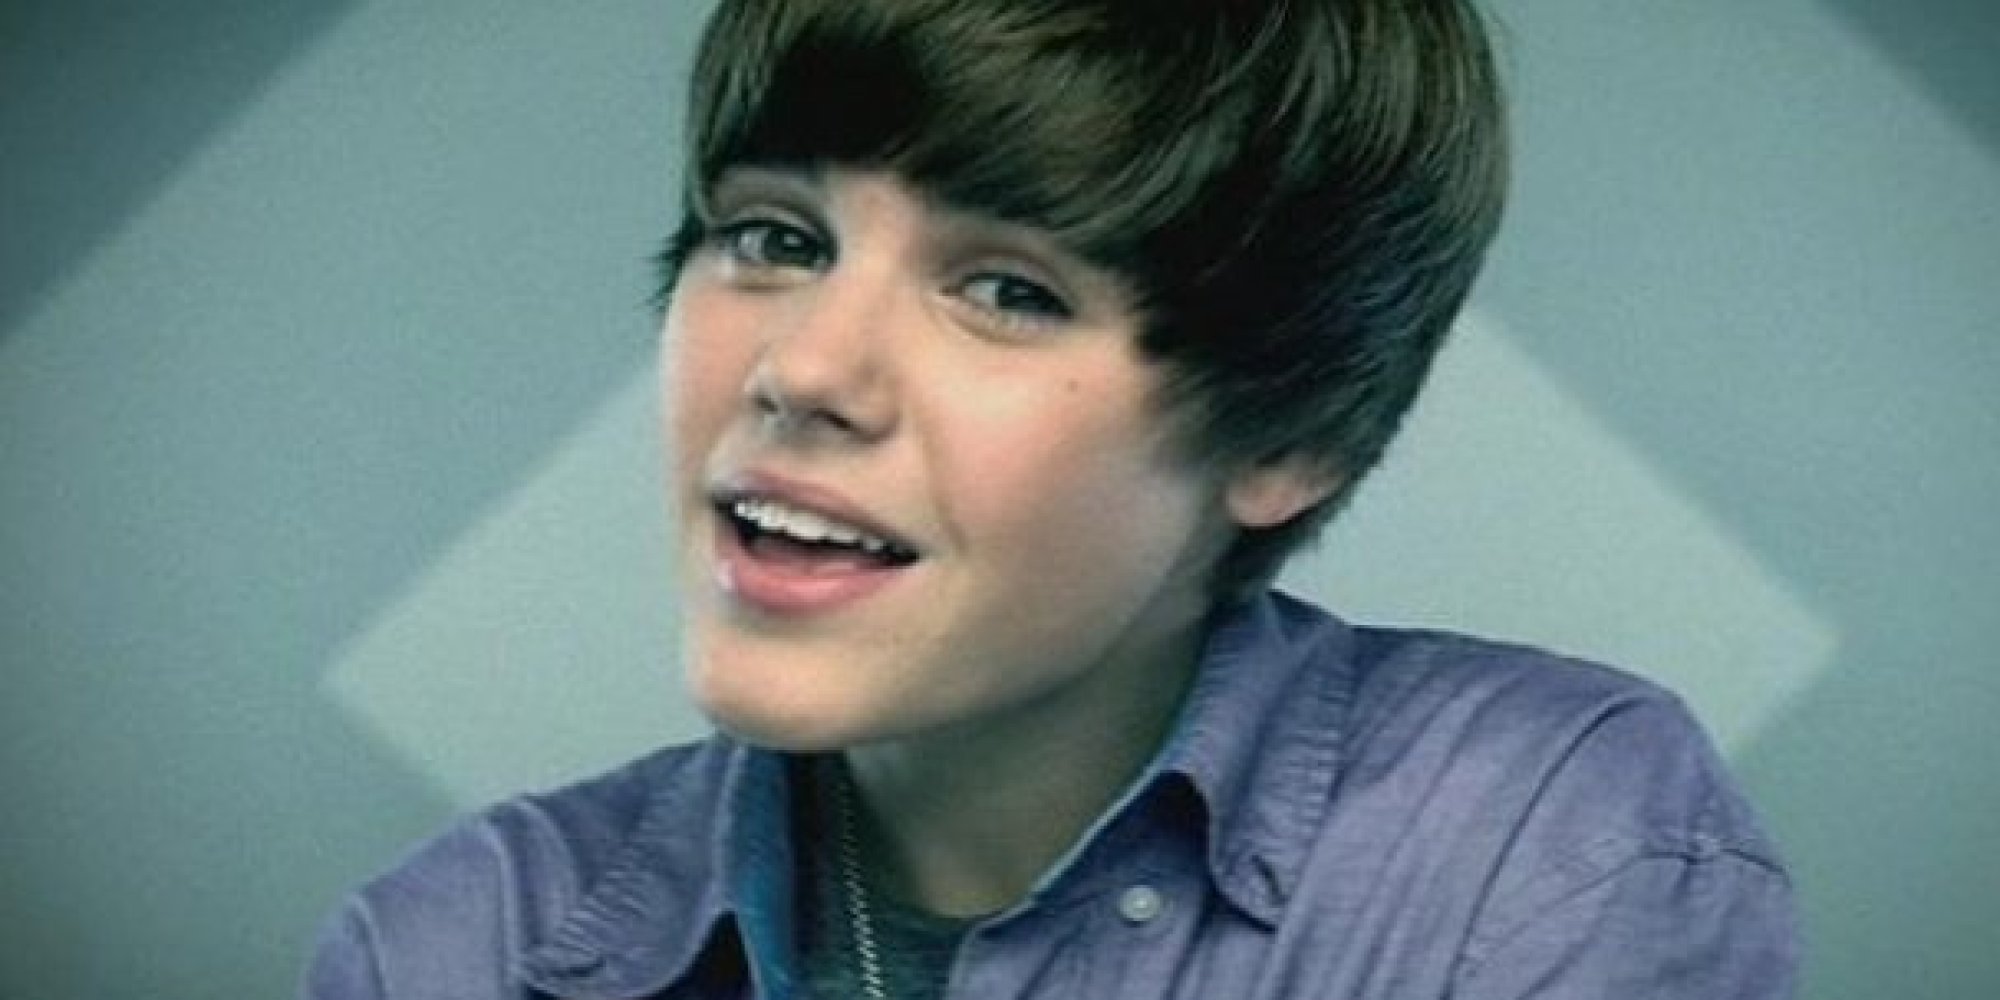 #BabyHit1Billion: Justin Bieber's 'Baby' Video Hits 1 ...